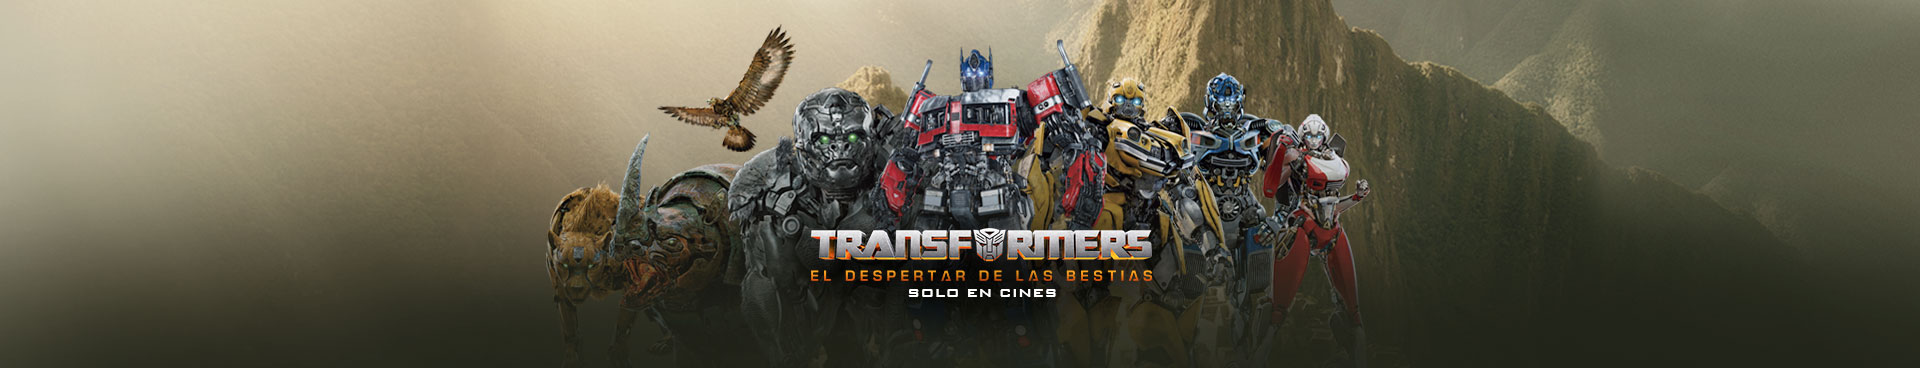 Transformers El Despertar de las Bestias 